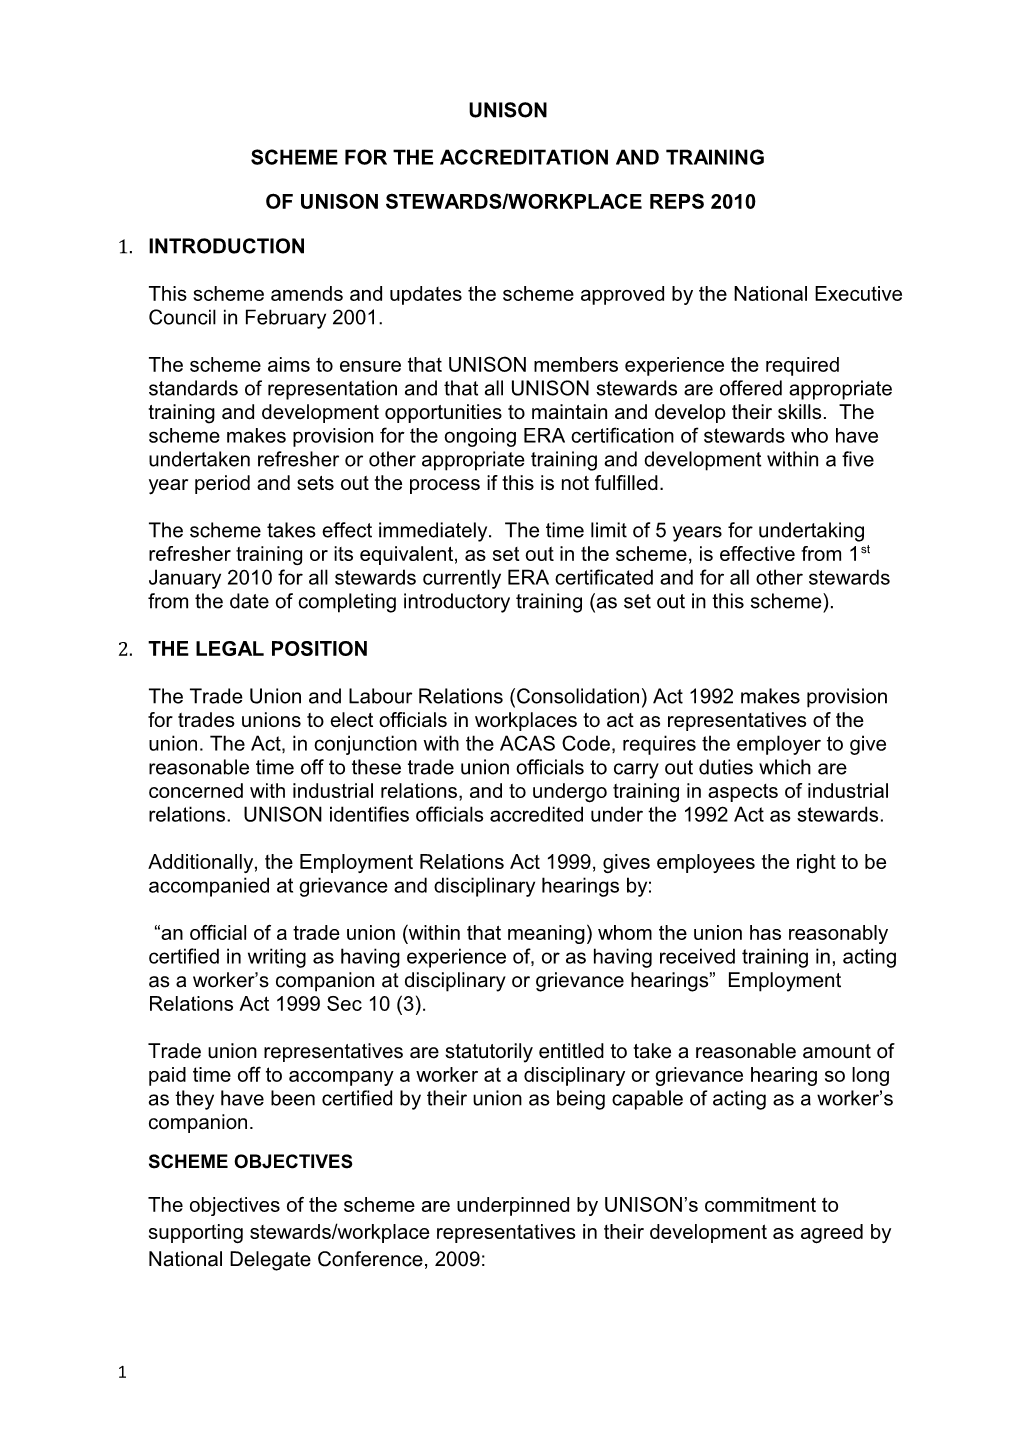 NEC Scheme for Stewards Accreditation